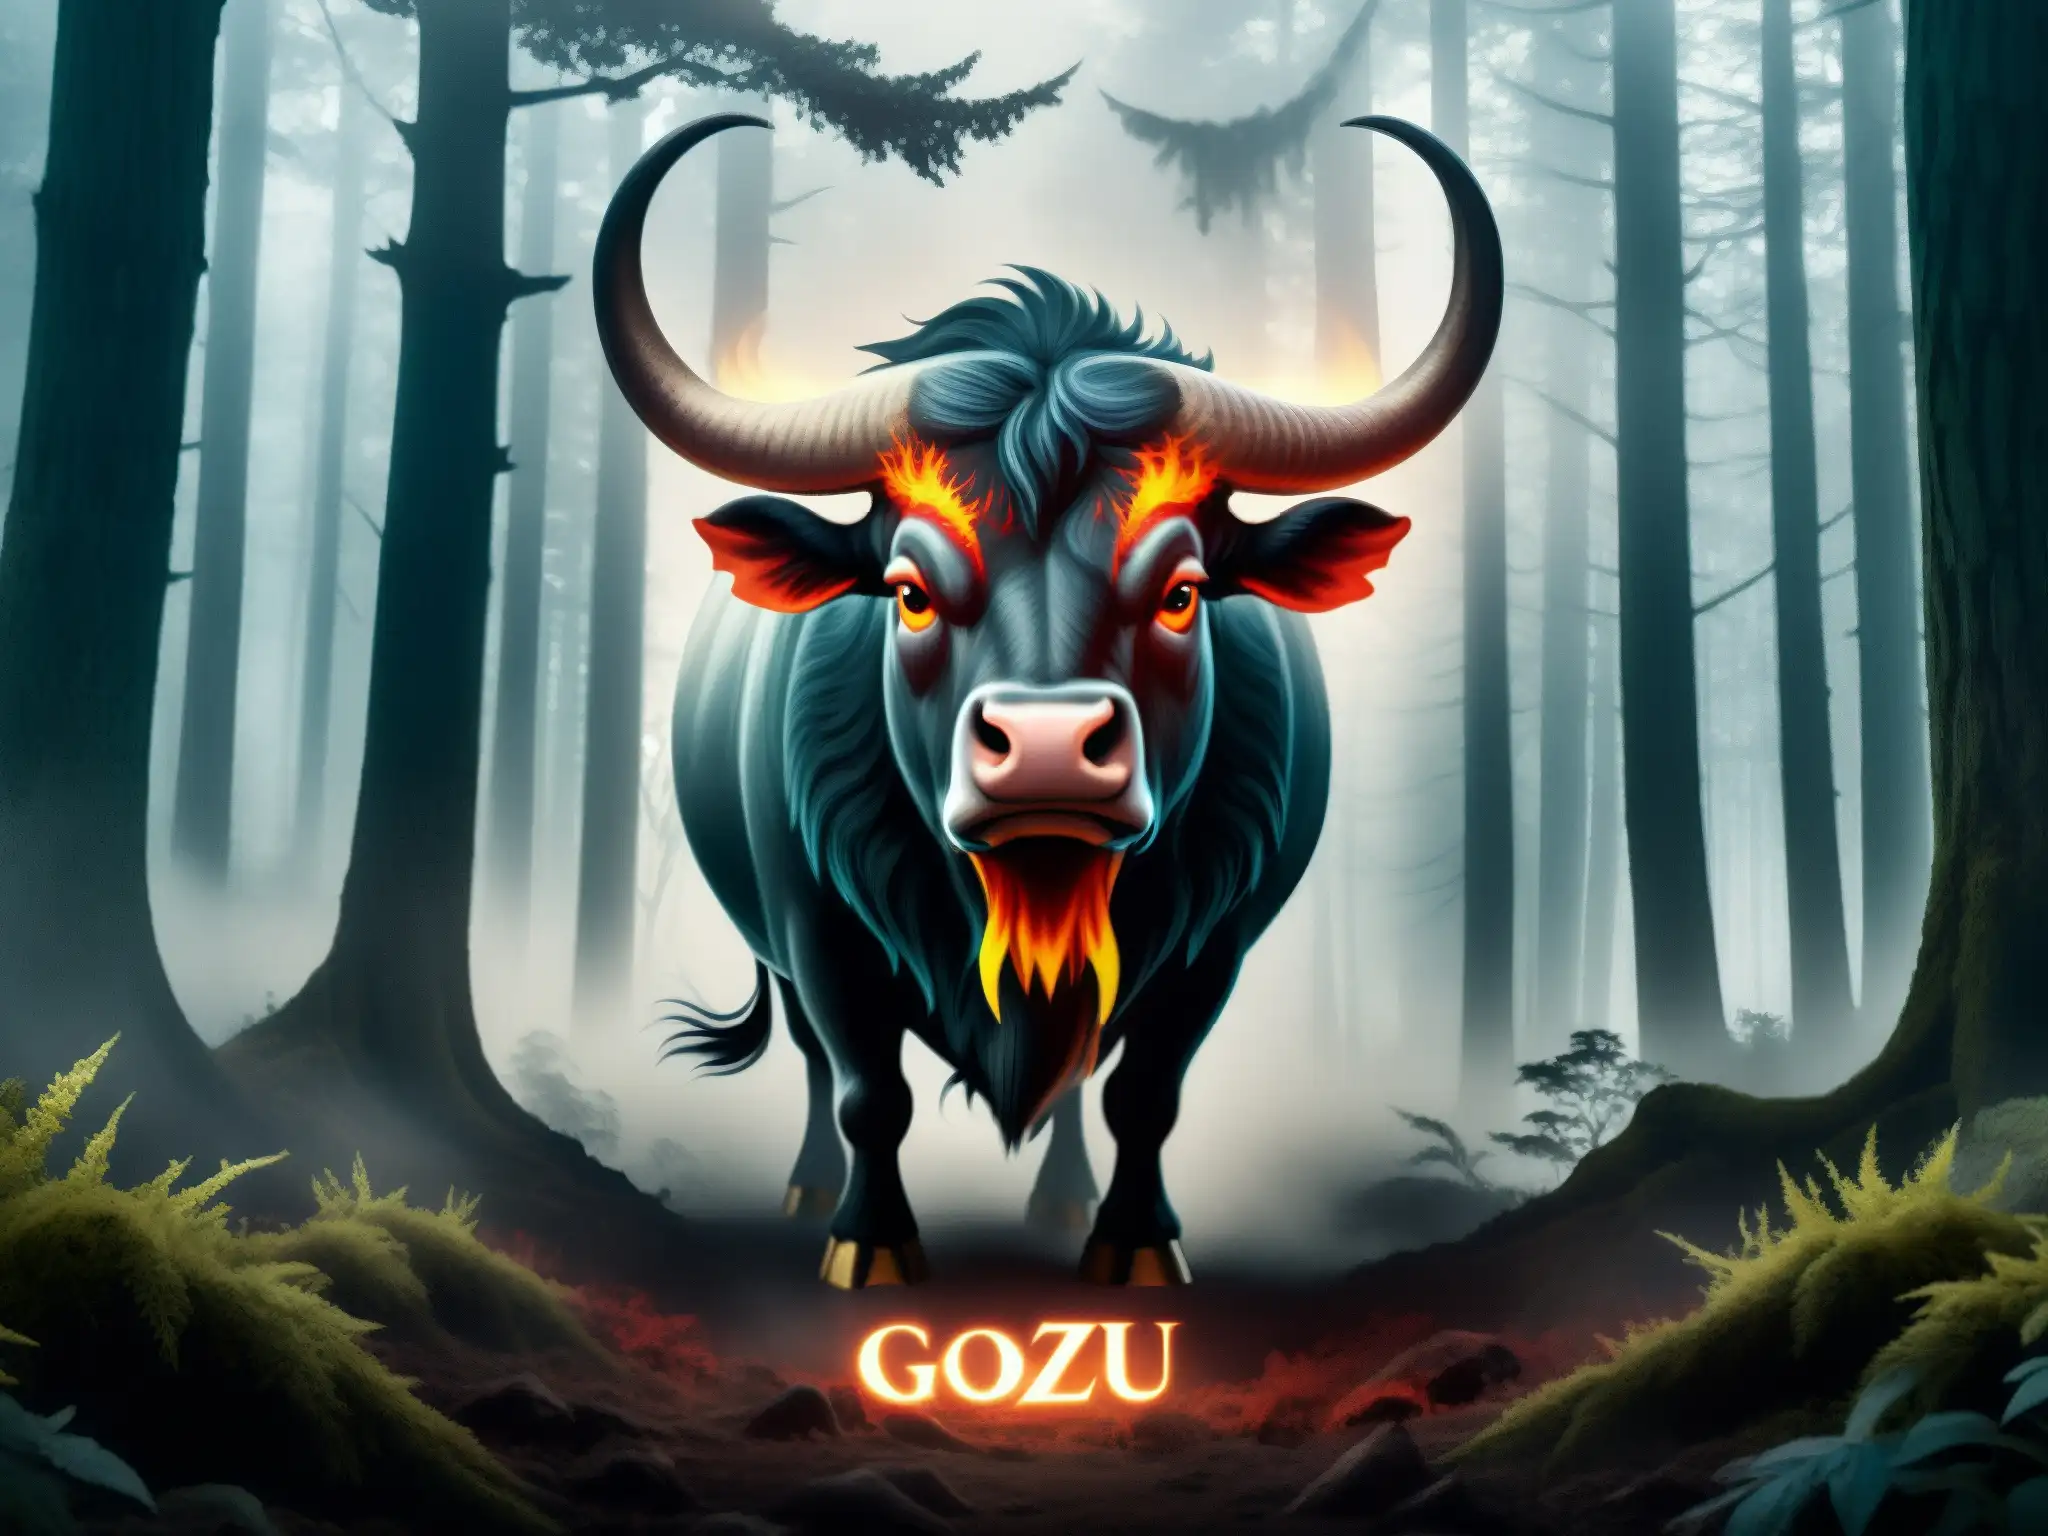 Una ilustración digital detallada del mitológico Gozu emergiendo de un oscuro y neblinoso bosque, evocando el origen y popularidad de la leyenda